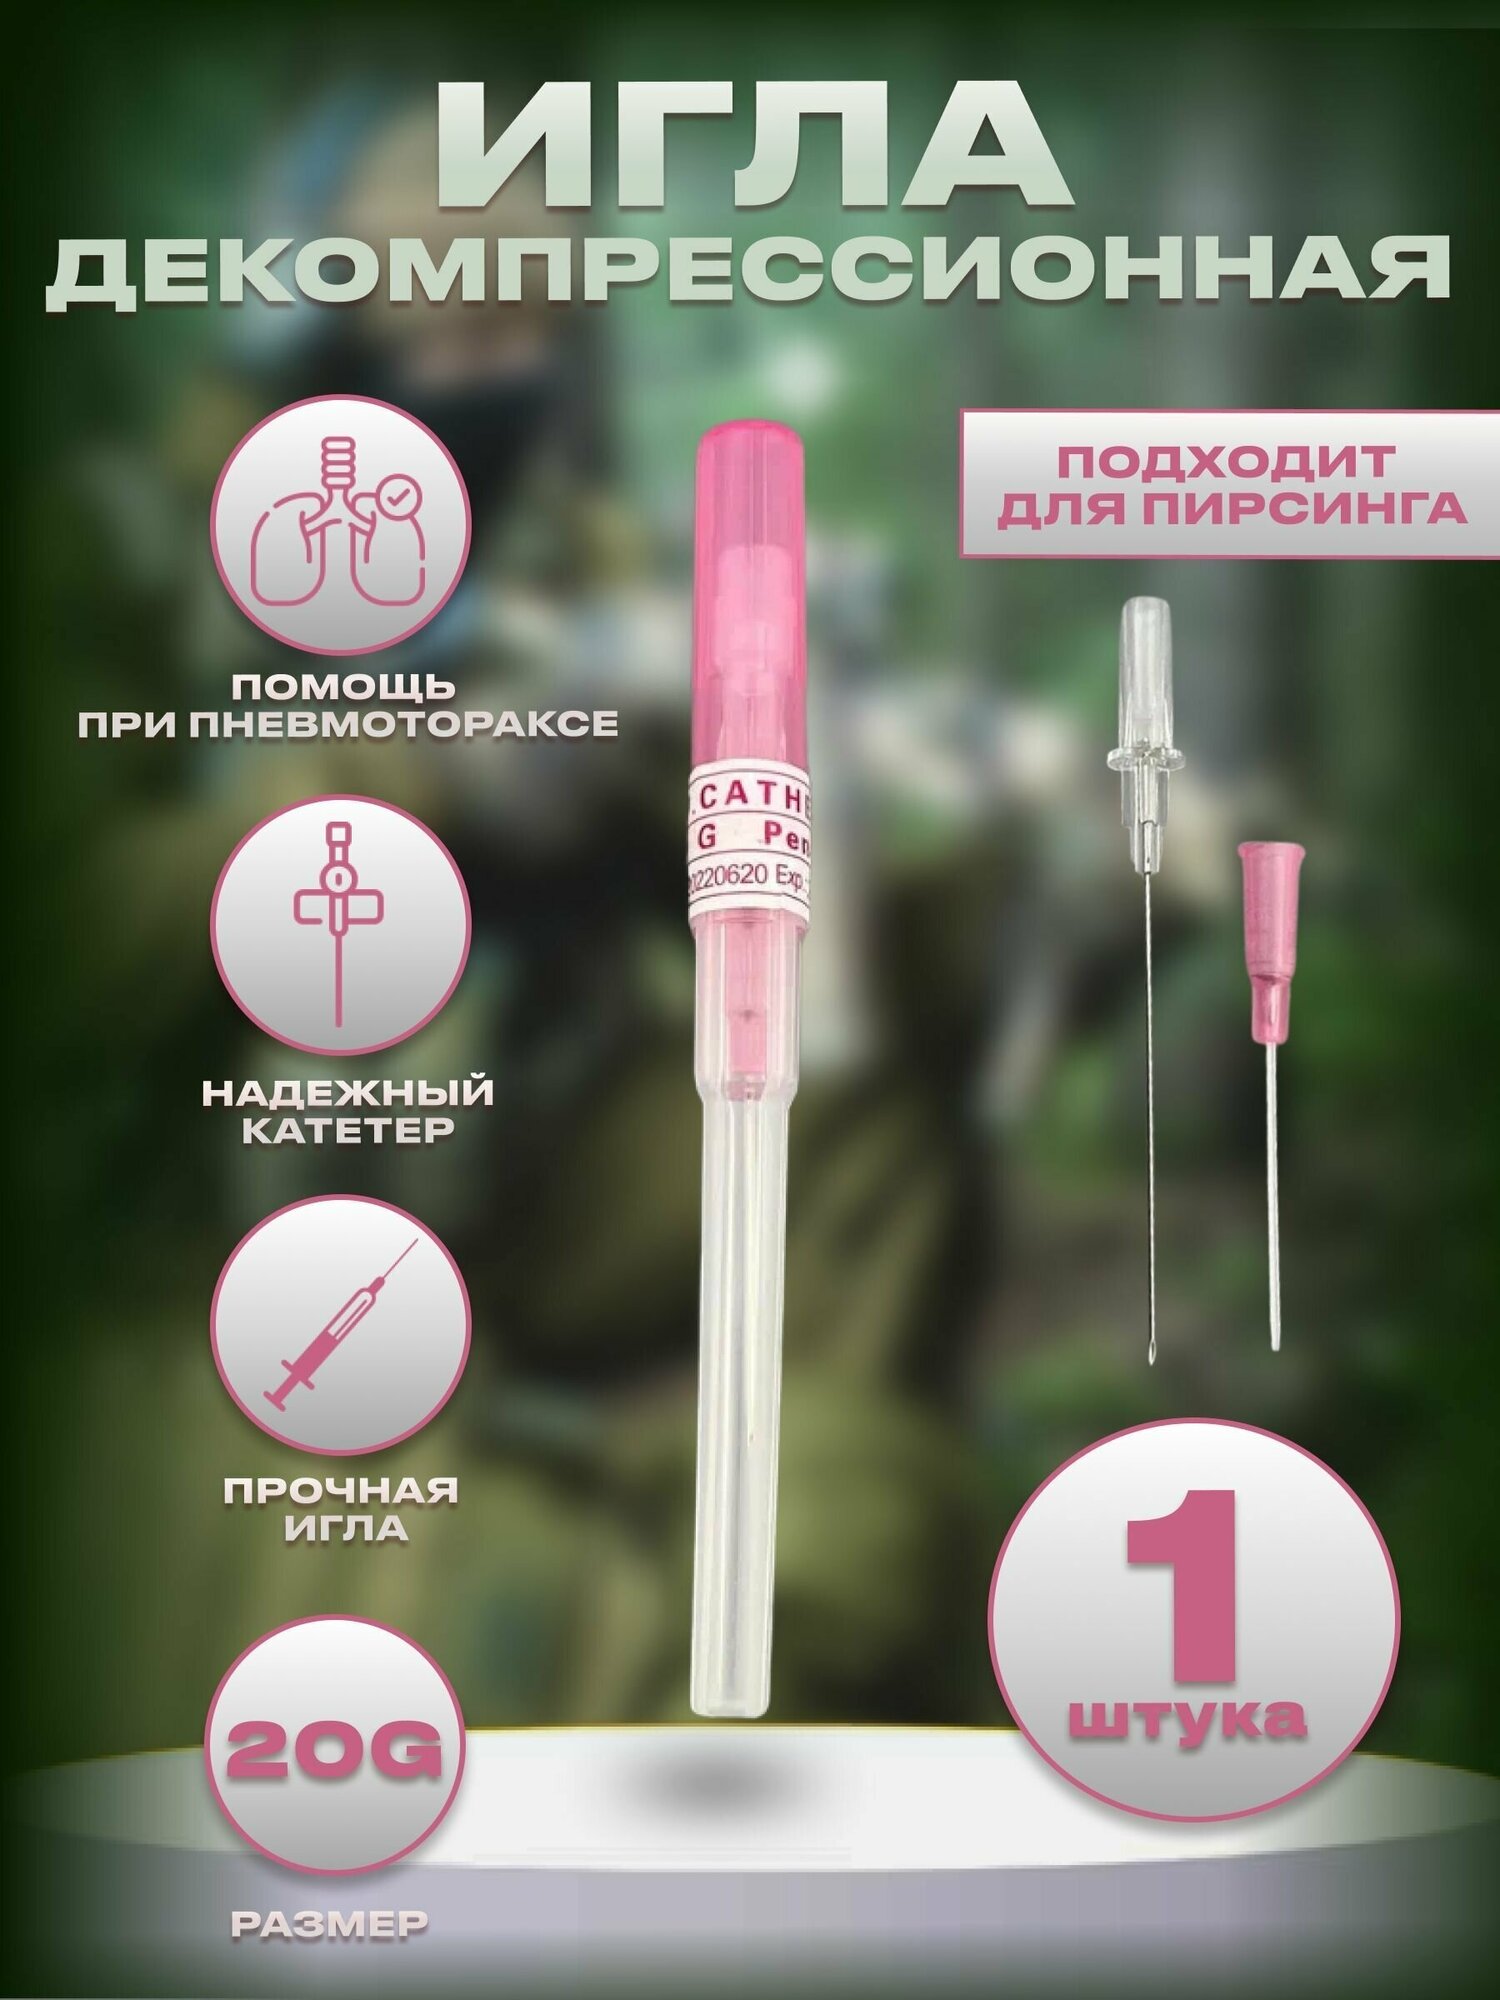 Тактическая инъекционная игла декомпрессионная розовая 20G 0.8 мм. (от пневмоторакса), игла для пирсинга - 1 шт